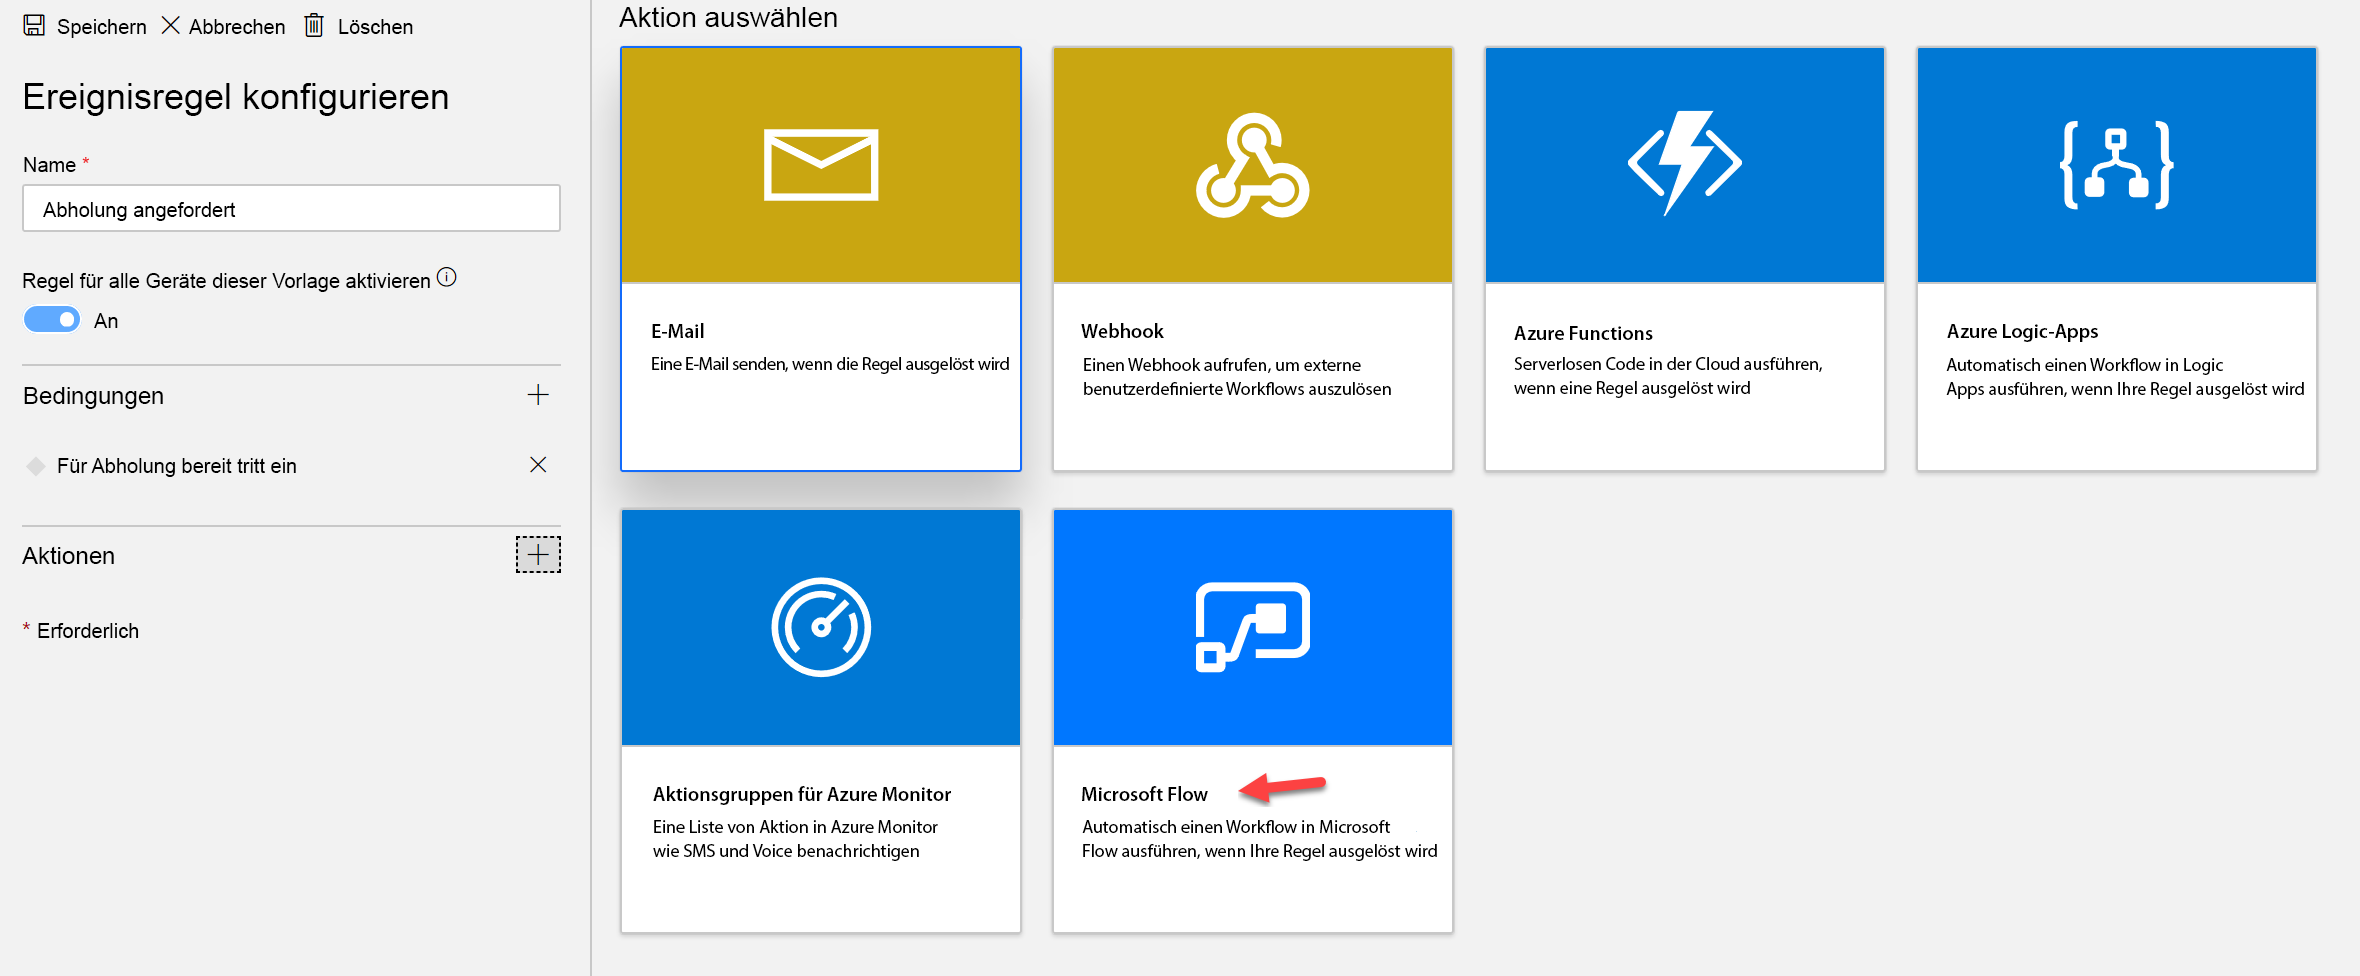 Screenshot des Bildschirms „Ereignisregel konfigurieren“ mit der hervorgehobenen Microsoft Flow-Aktion